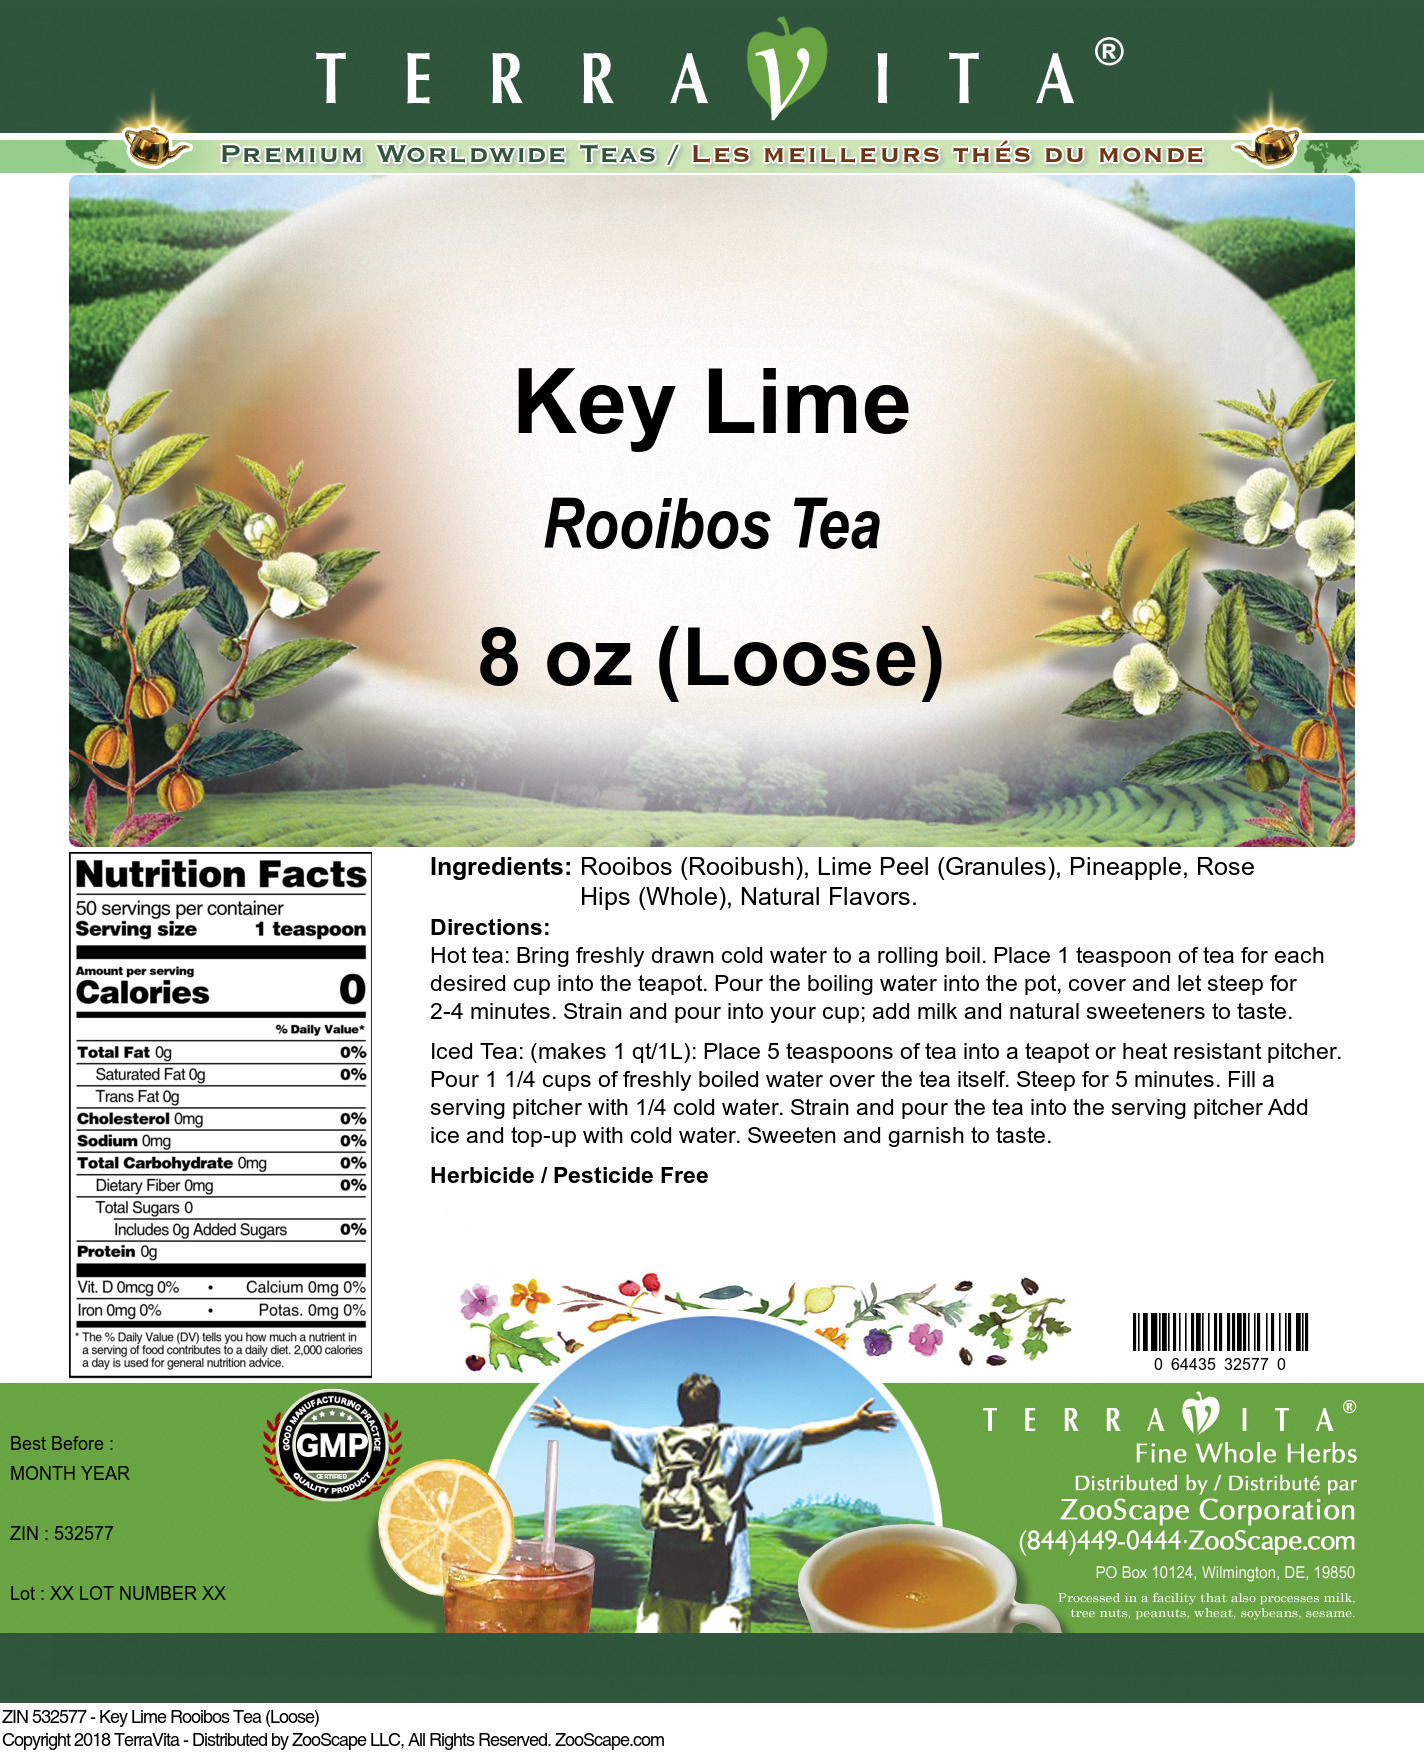 Key Lime Rooibos Tea (Loose) - Label